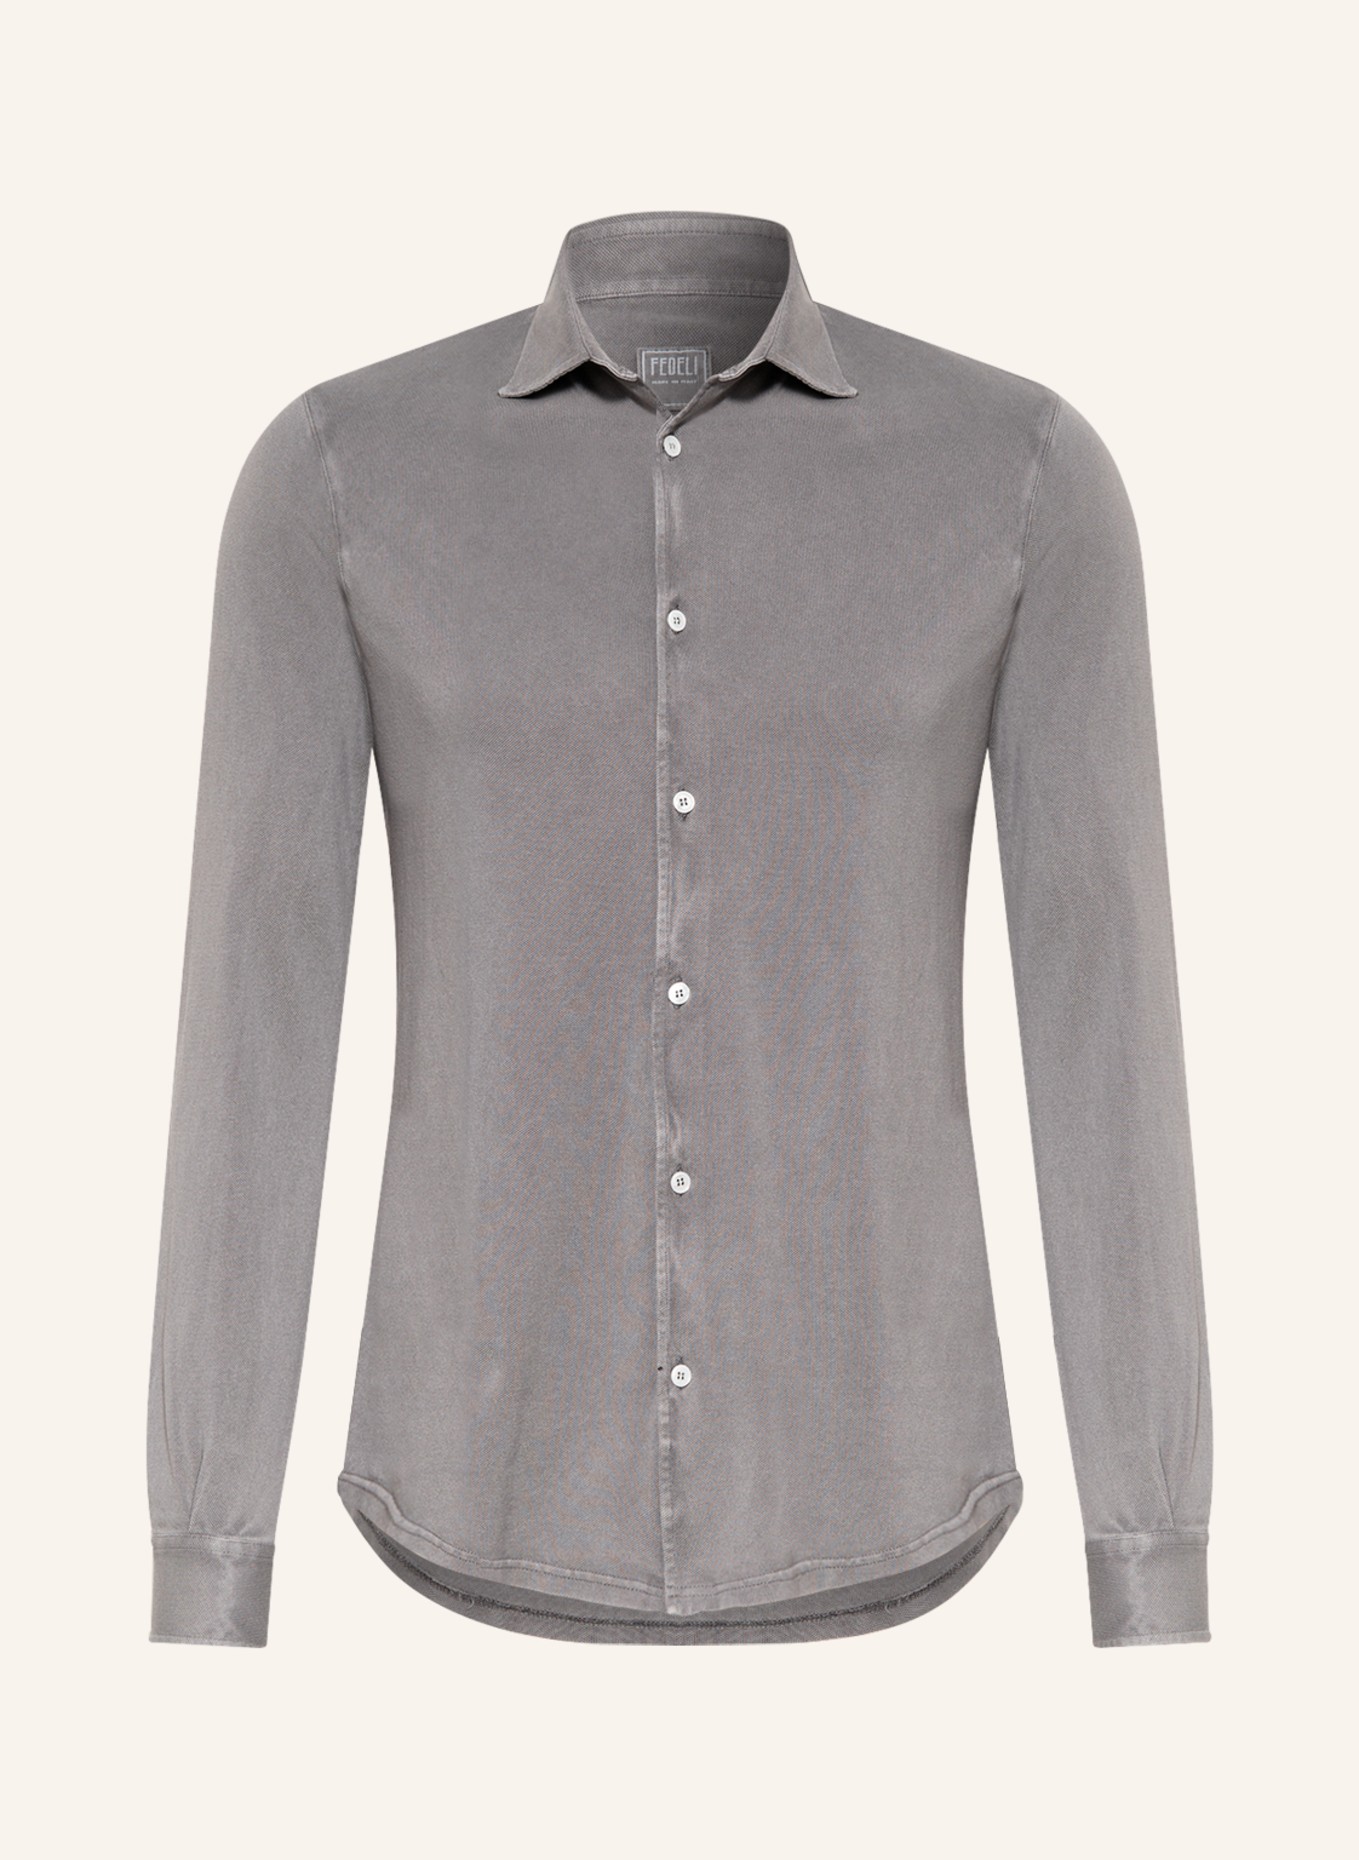 FEDELI Piqué-Hemd Slim Fit, Farbe: TAUPE (Bild 1)